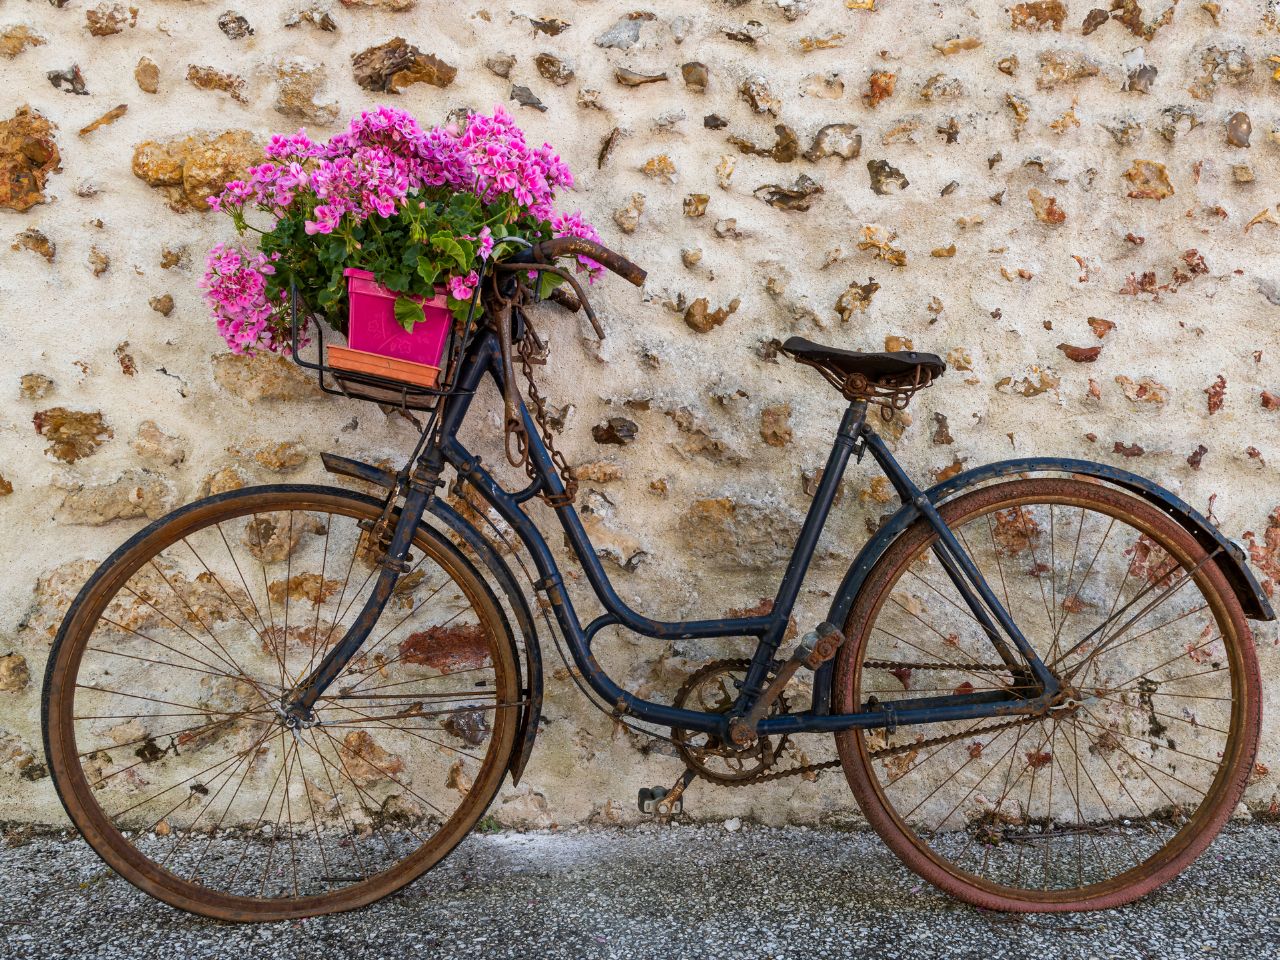 Różowe hortensje w skrzynce umocowanej na starym rowerze